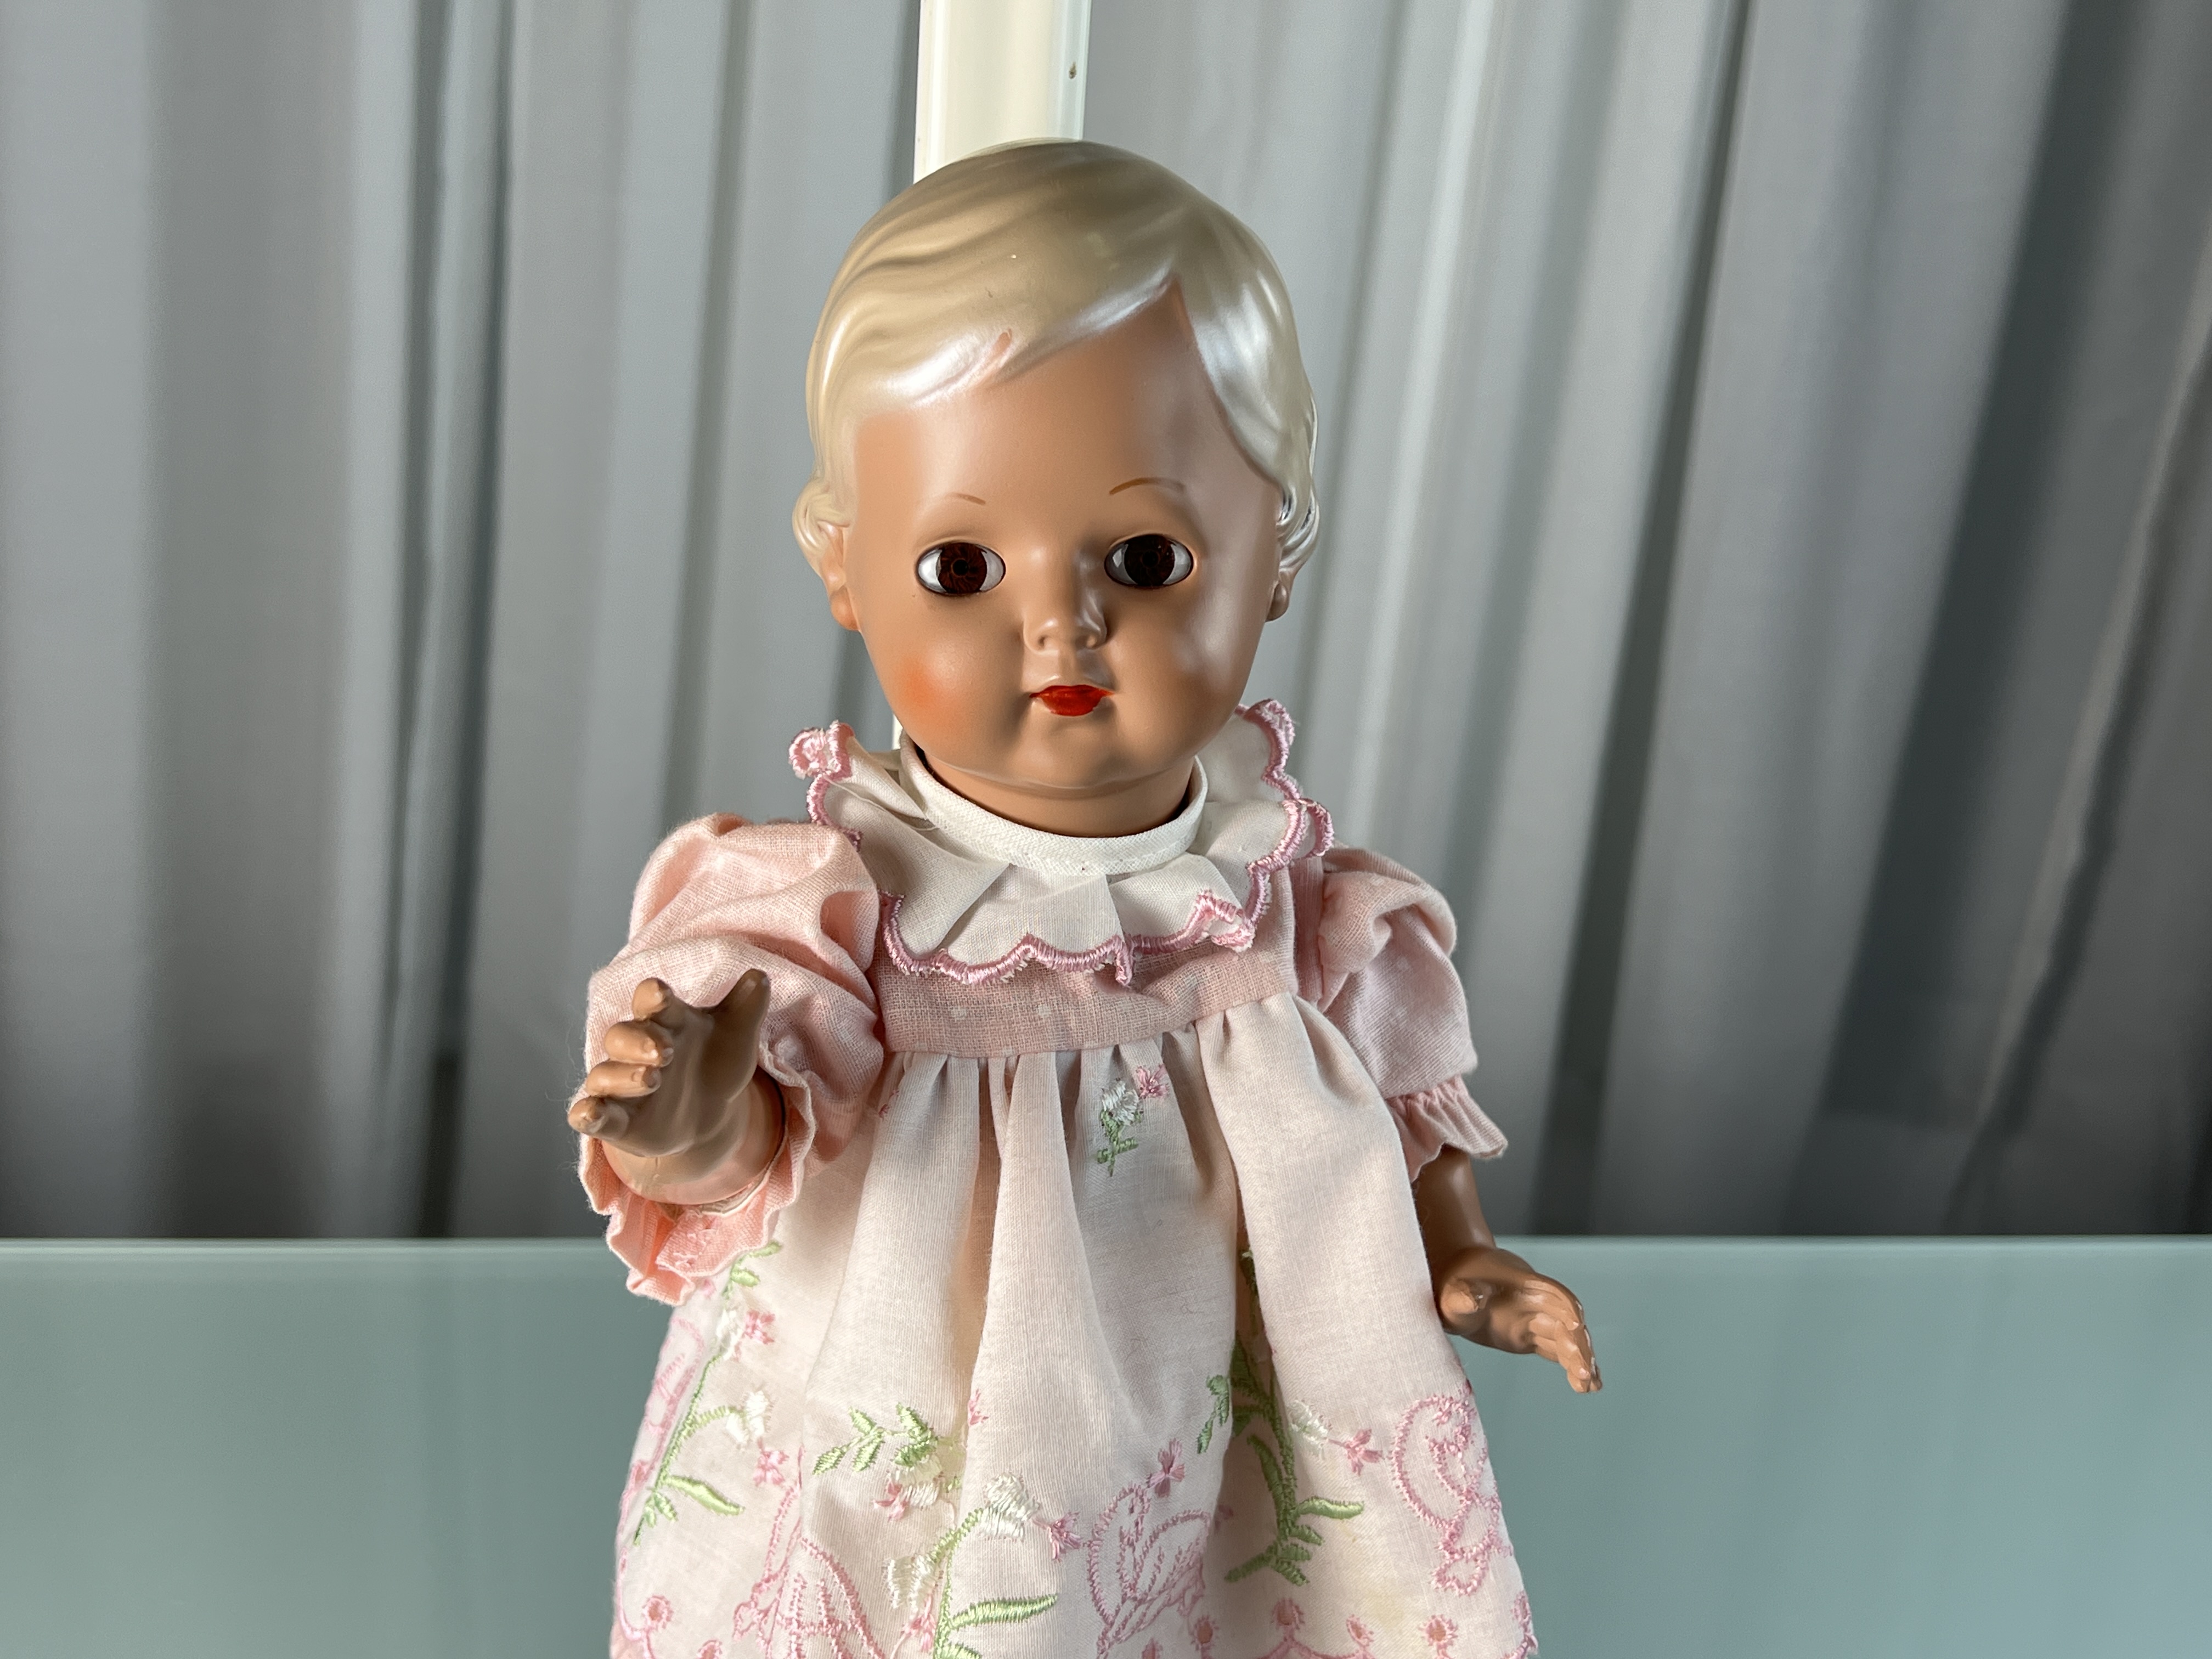 Schildkrötpuppe Puppe 34 cm. Top Zustand    